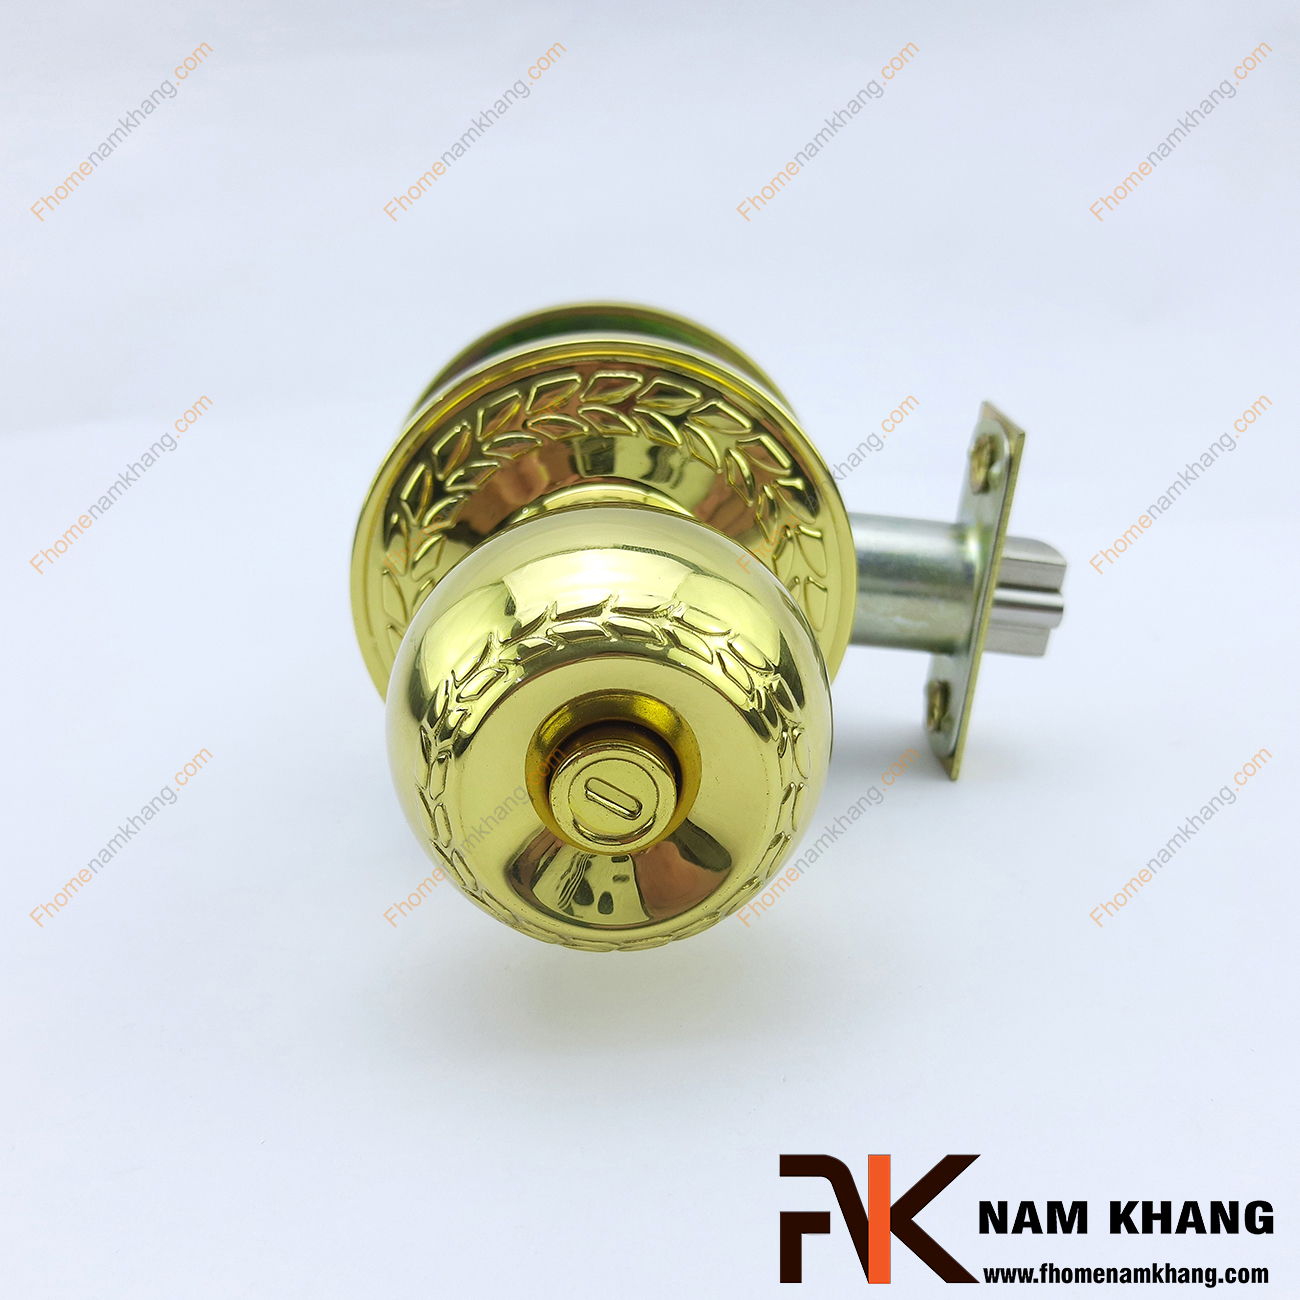 Khóa tay nắm tròn màu vàng bóng NK430KTYALE-V được sản xuất từ chất liệu cao cấp, có độ bền cao và kết cấu bền chặt.